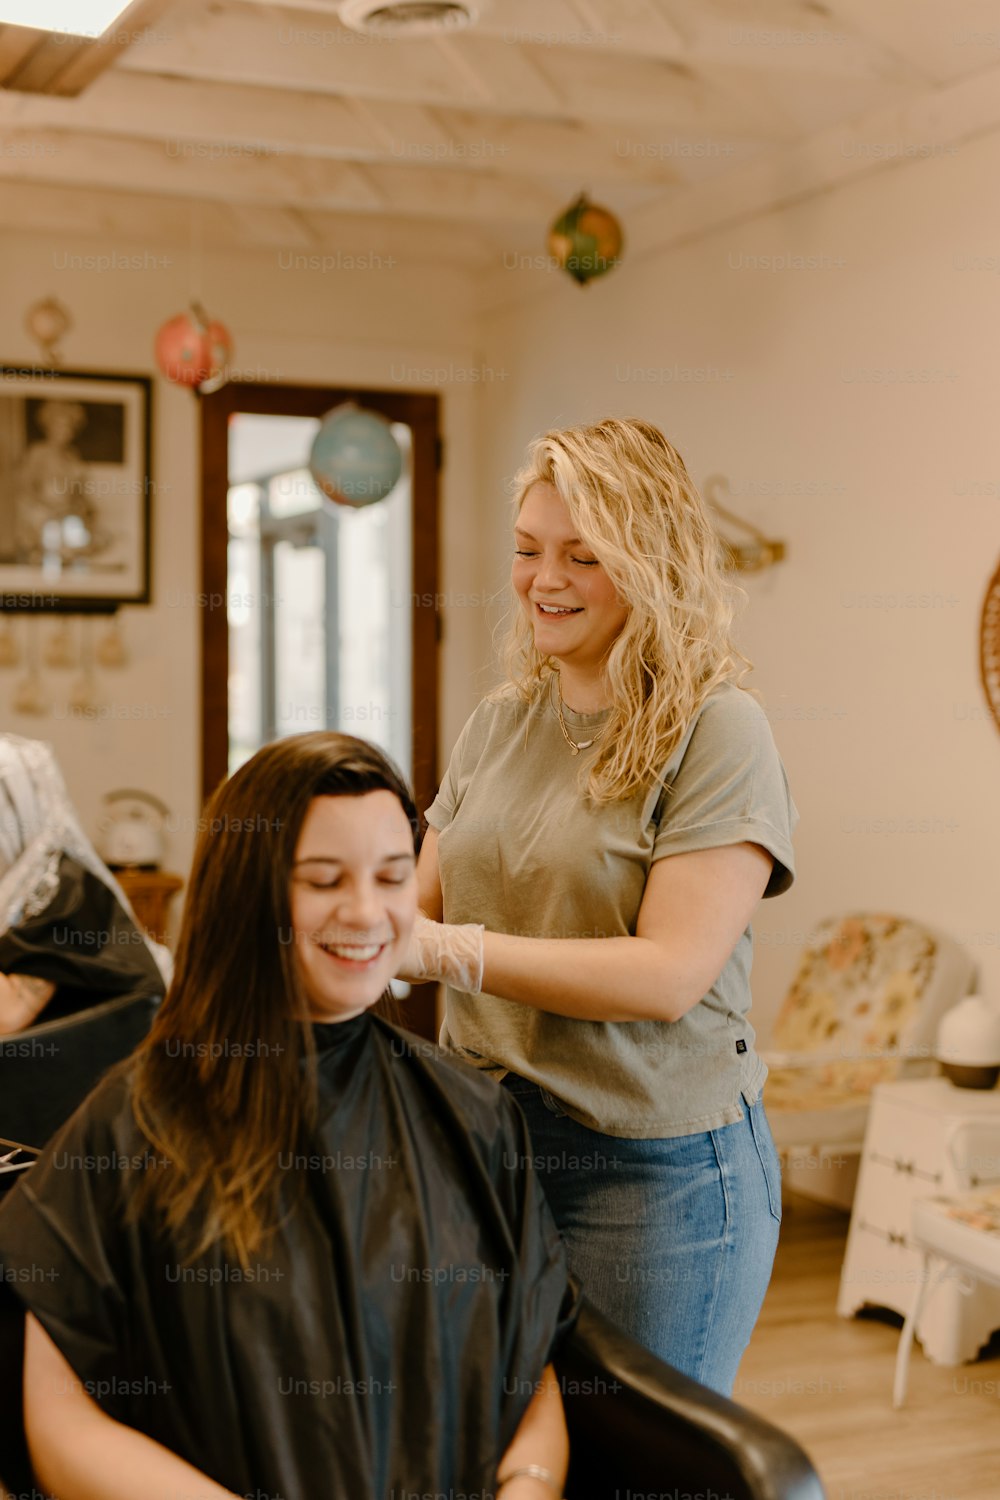 a woman getting her hair cut in a salon